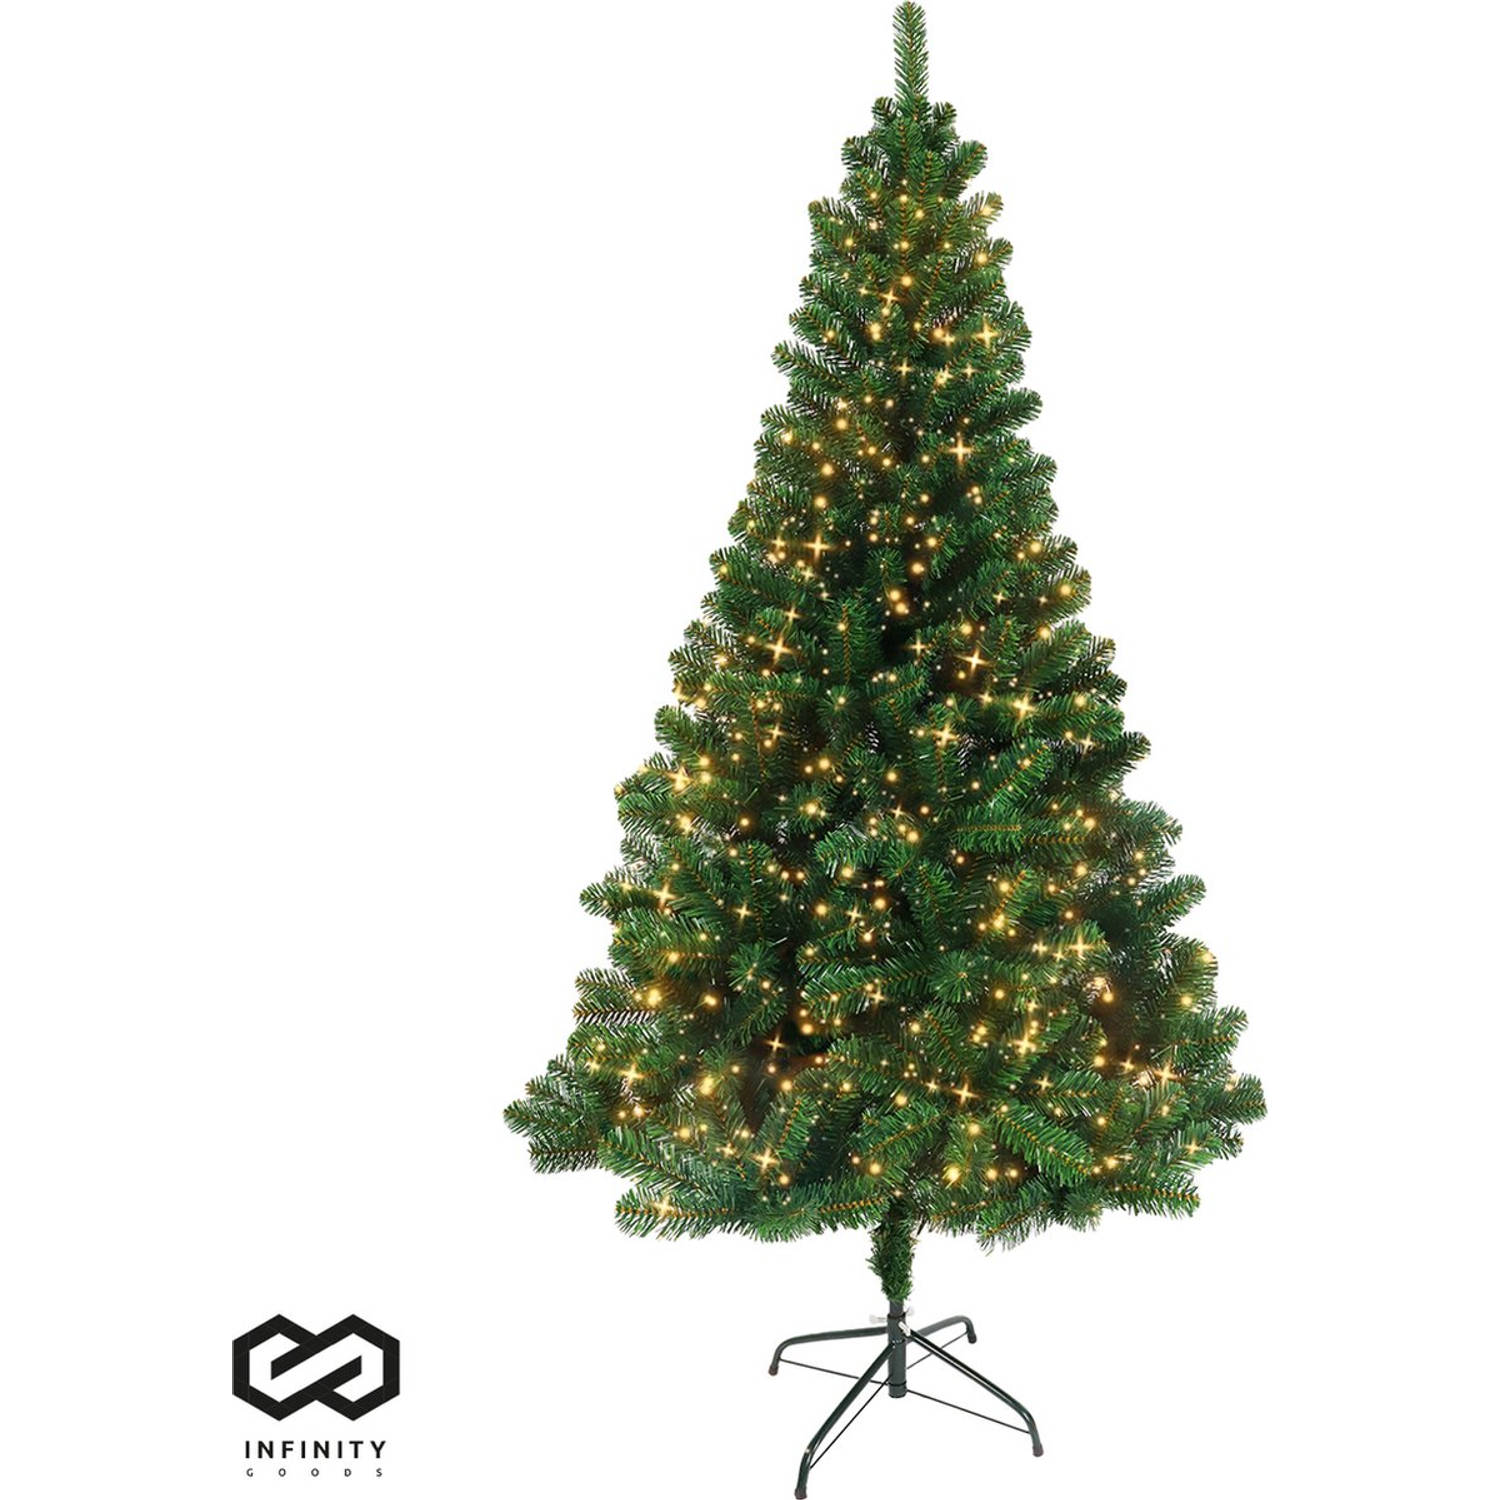 Infinity Goods Kunstkerstboom Met LED Verlichting - 210 cm - Realistische Kunststof Kerstboom - Metalen Standaard -